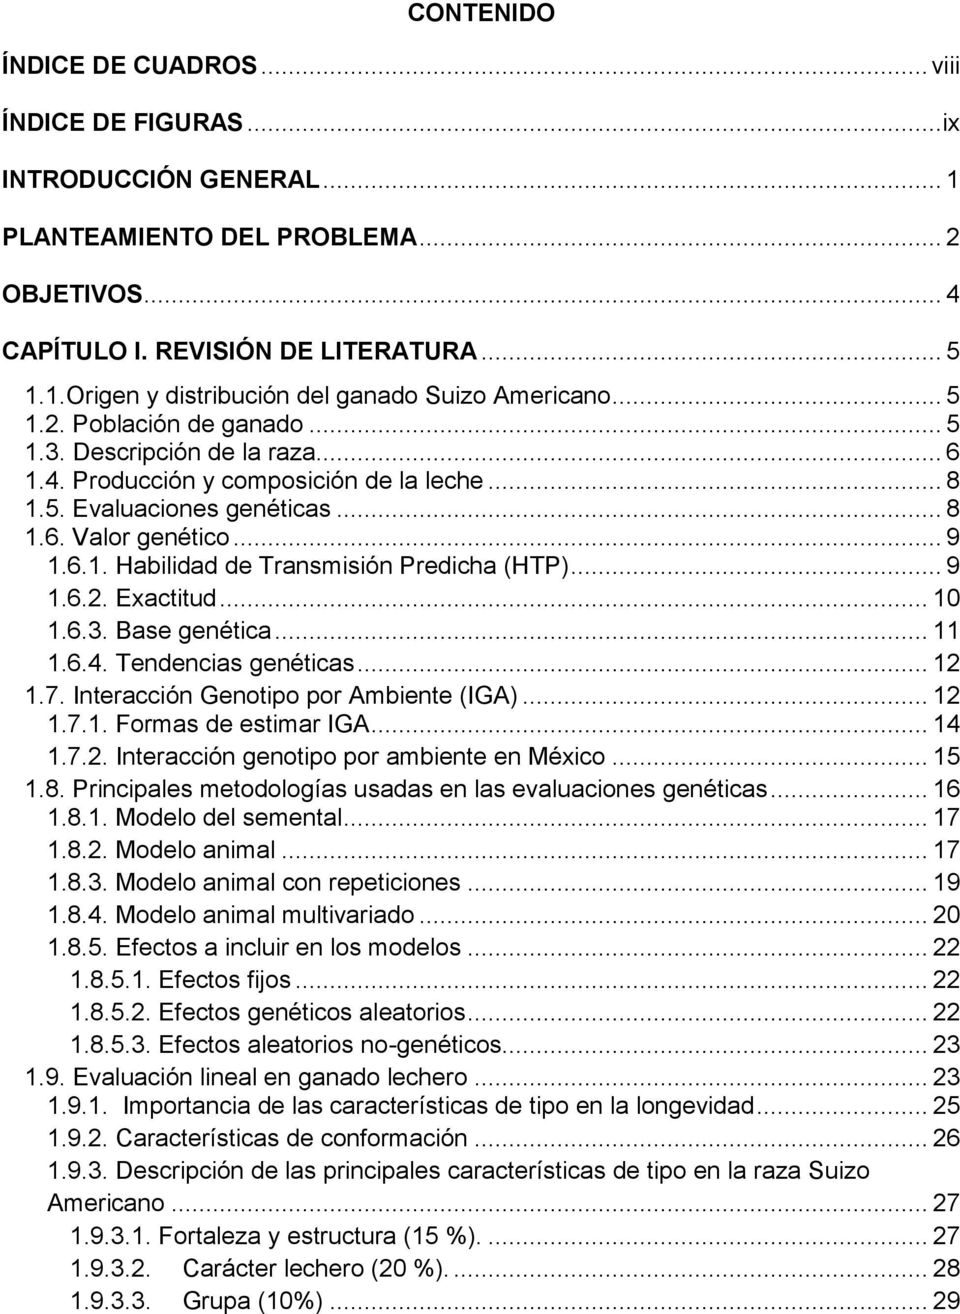 .. 9 1.6.2. Exactitud... 10 1.6.3. Base genética... 11 1.6.4. Tendencias genéticas... 12 1.7. Interacción Genotipo por Ambiente (IGA)... 12 1.7.1. Formas de estimar IGA... 14 1.7.2. Interacción genotipo por ambiente en México.